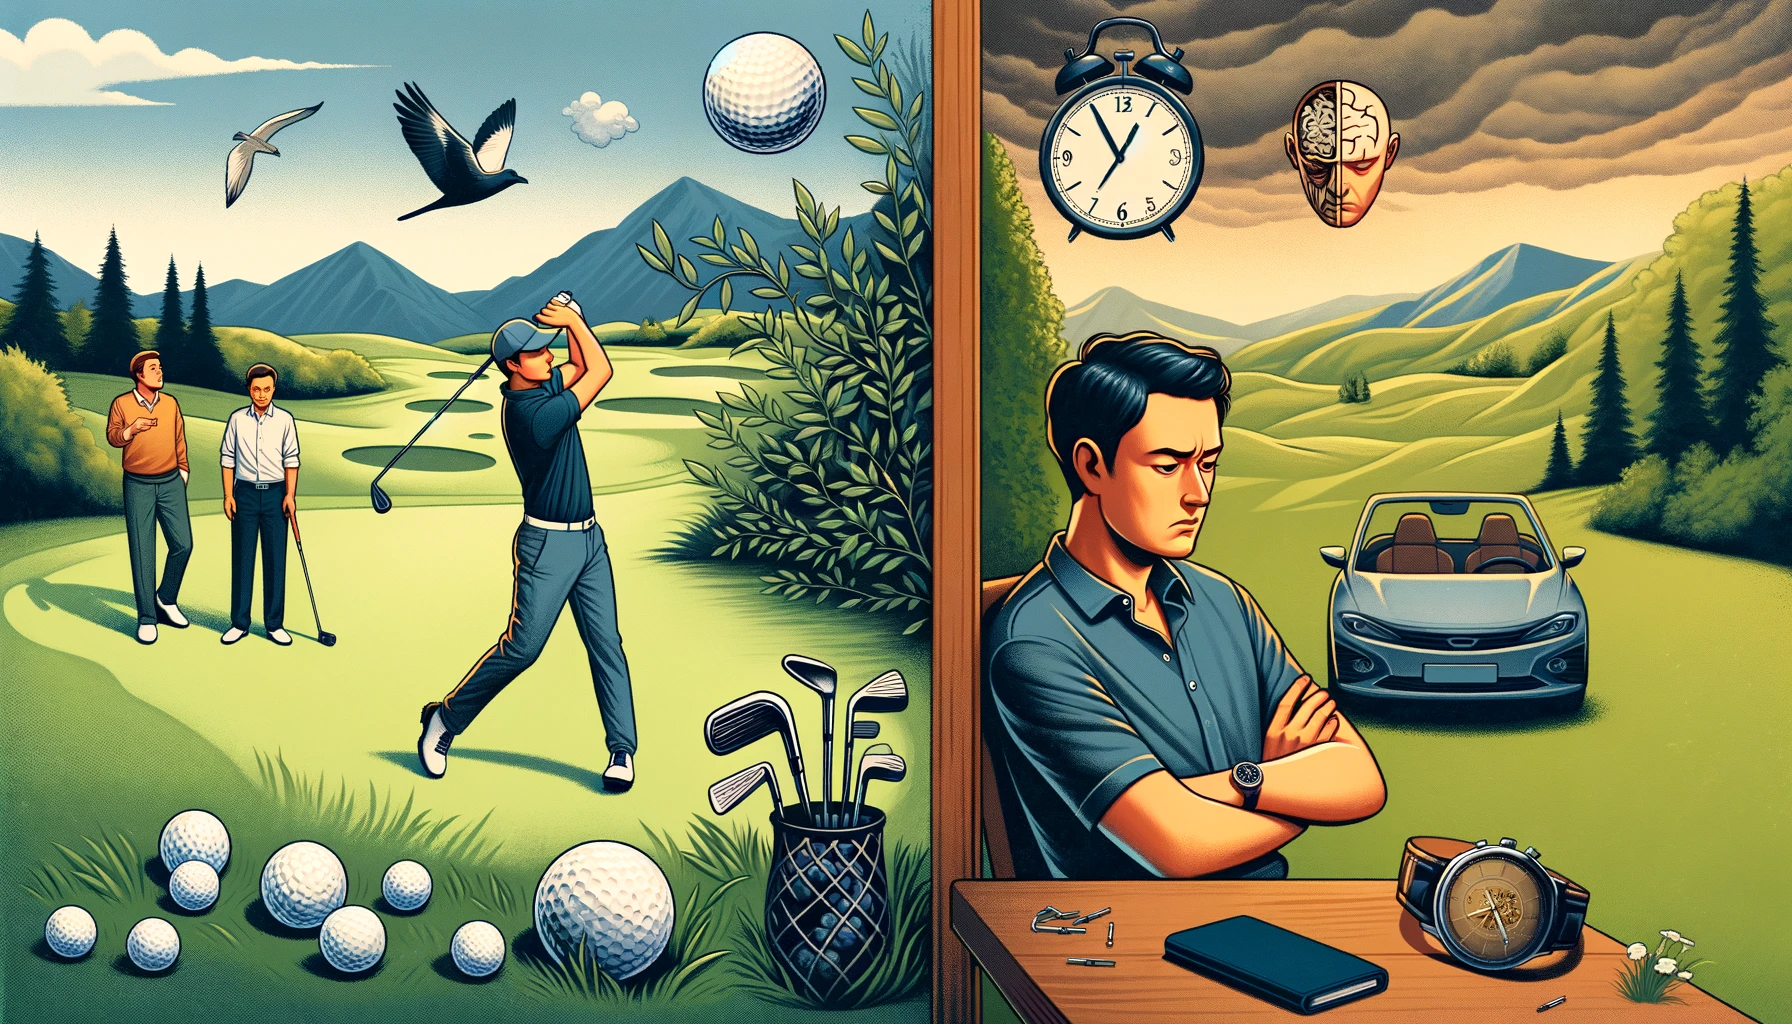 골프와 스쿼시 비교: 장단점 및 운동 효과 분석 - 골프의 장점과 단점